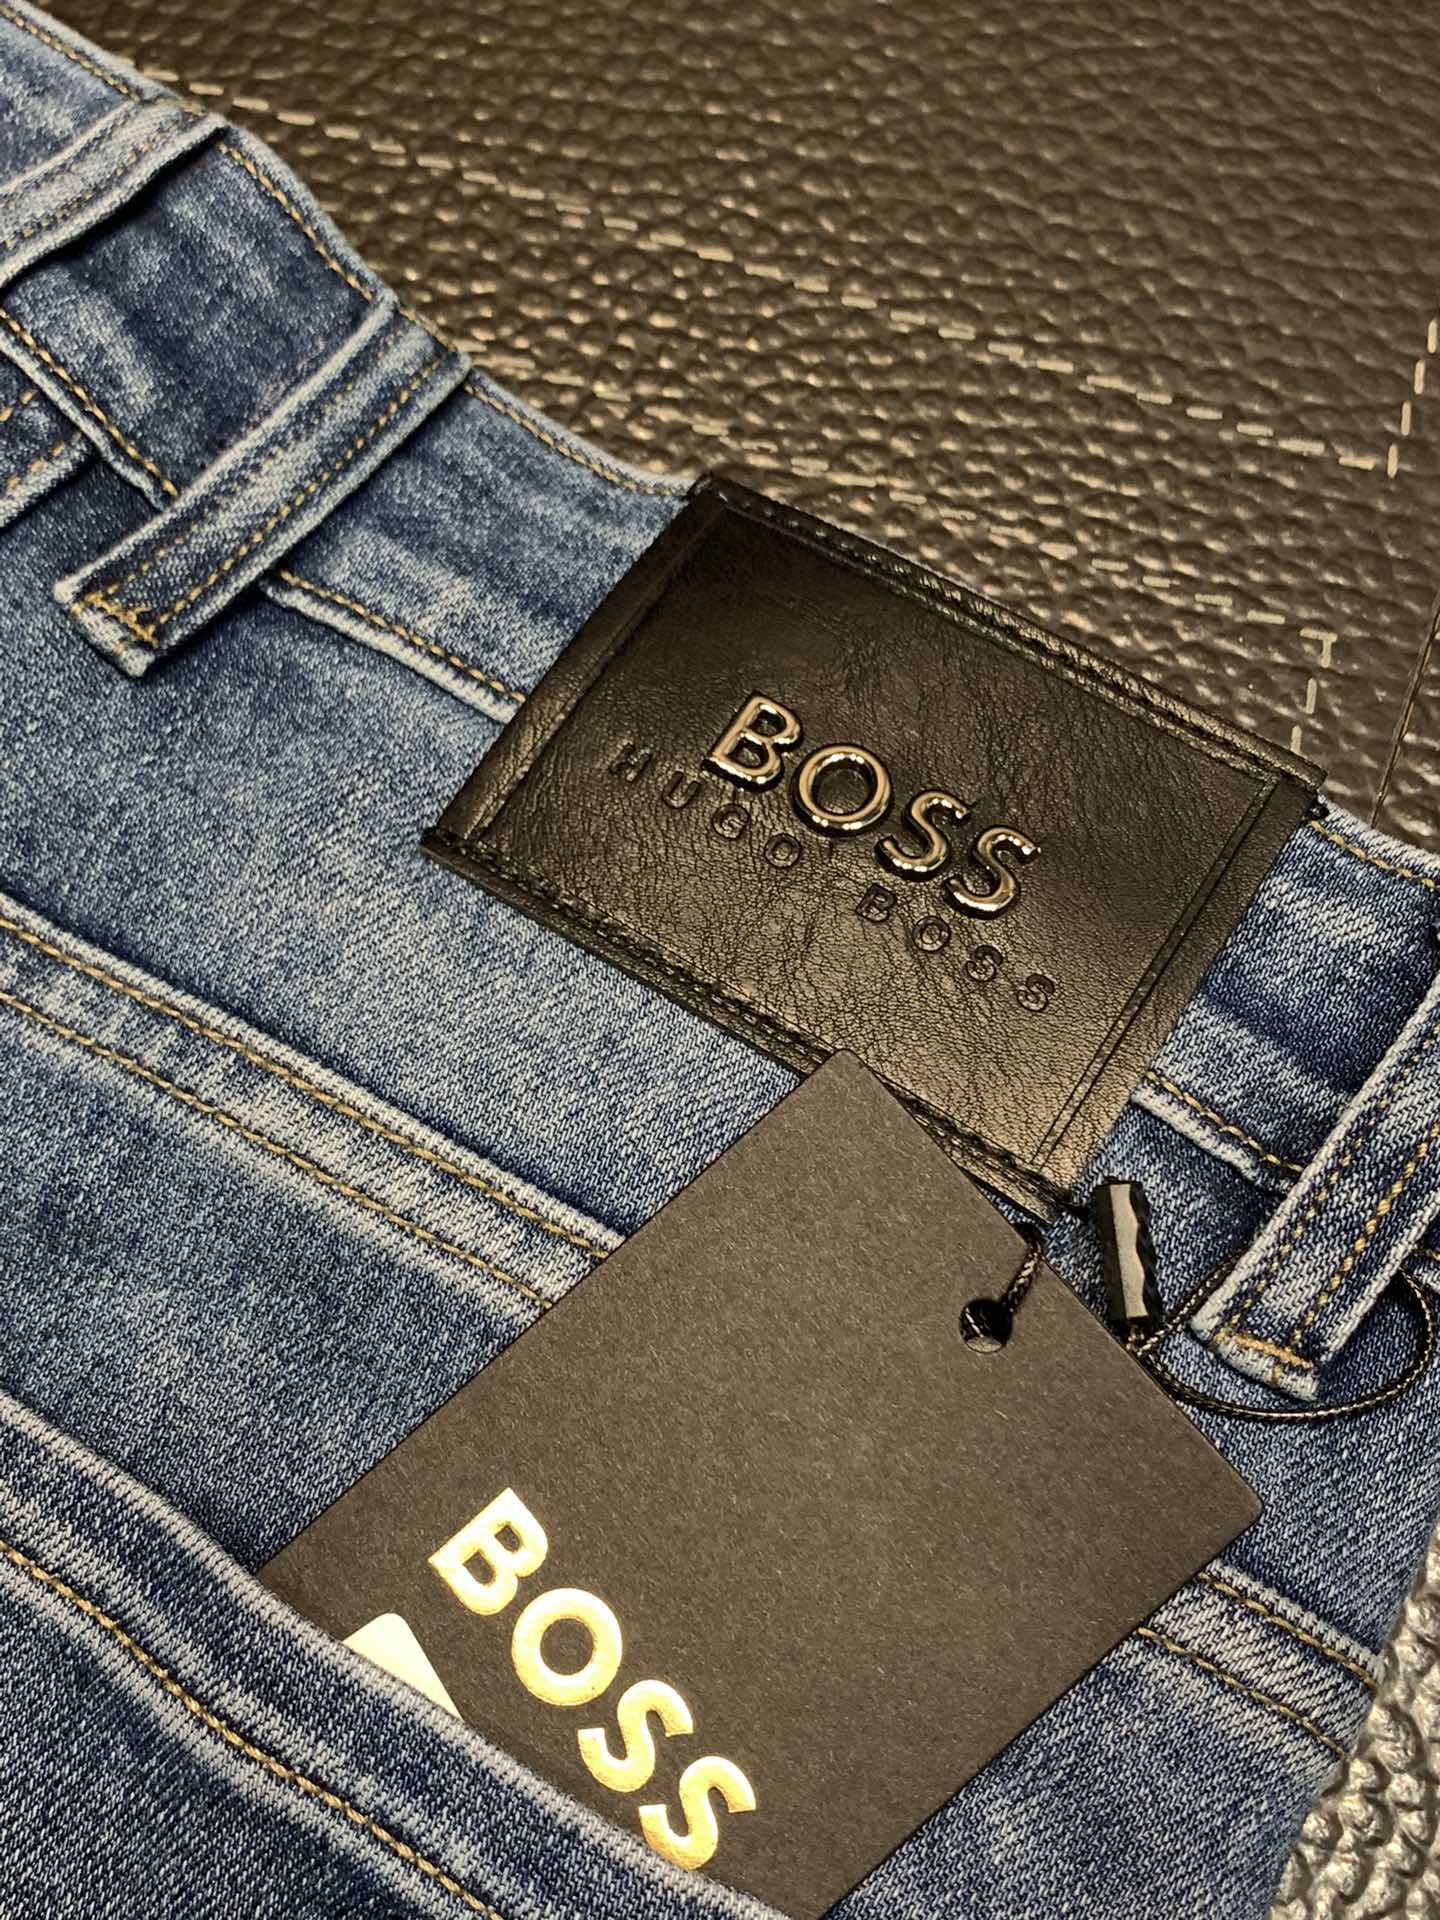 BOSS独家专供新款休闲牛仔裤高端版本专柜定制面料透气舒适度高细节无可挑剔品牌元素设计理念体现高品质手感